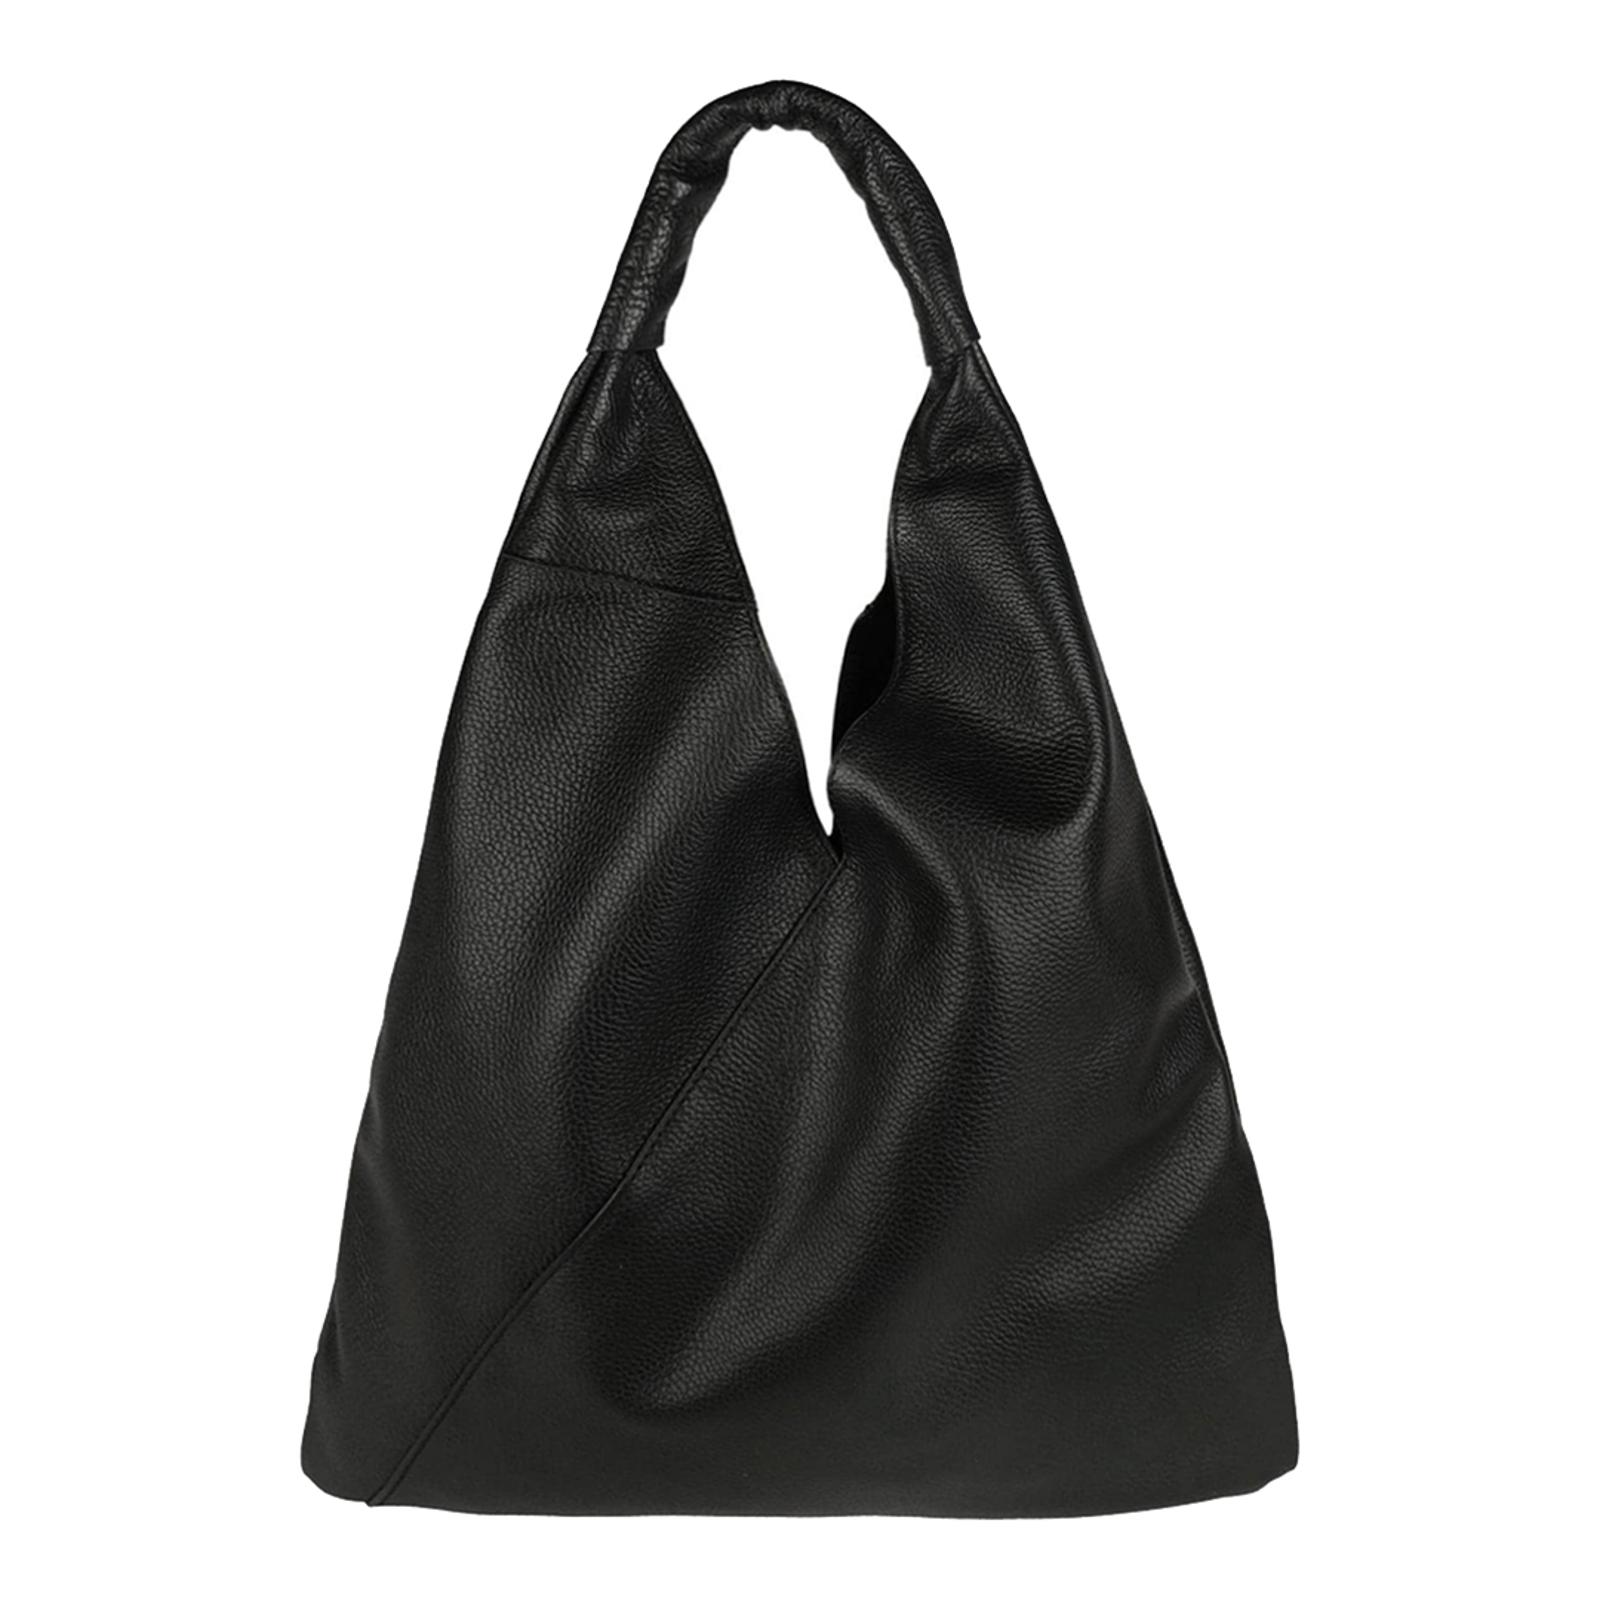 Black Dollar Leather Shoulder Bag - BrandAlley